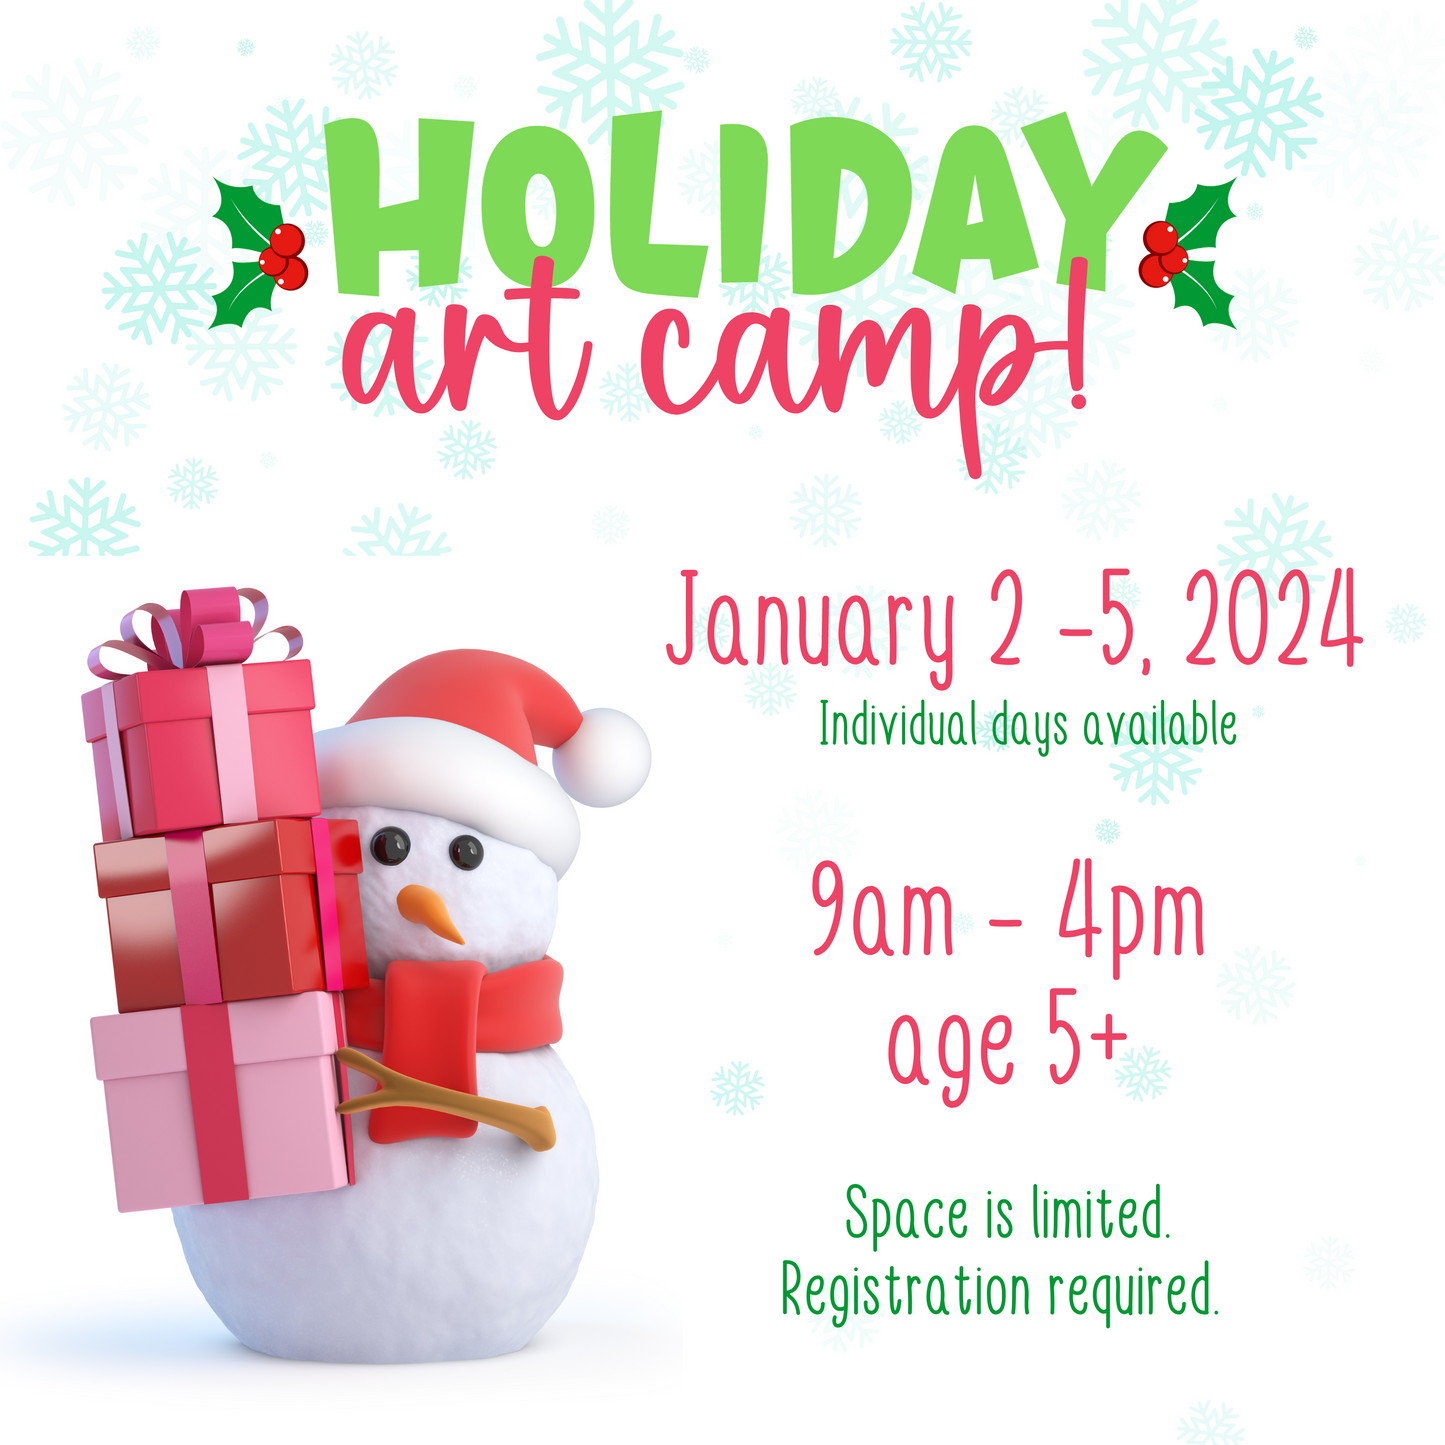 Holiday Art Camp - January 3, 2024